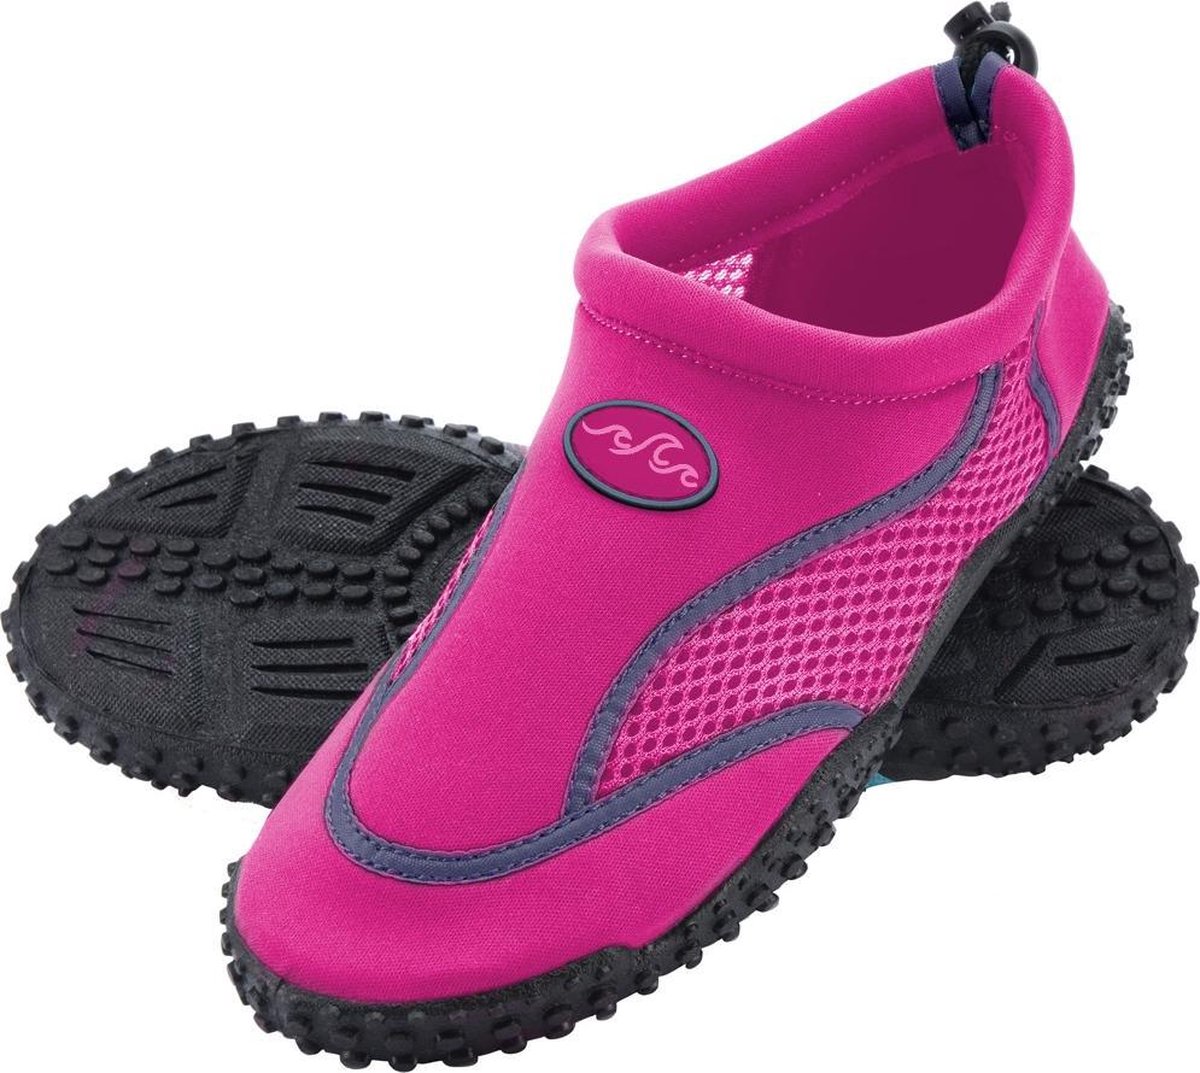 Mabove Chaussures de Aquatiques pour Hommes Femmes Chaussures de Nager Chaussures de Plage et d'eau GR 36-48 EU 